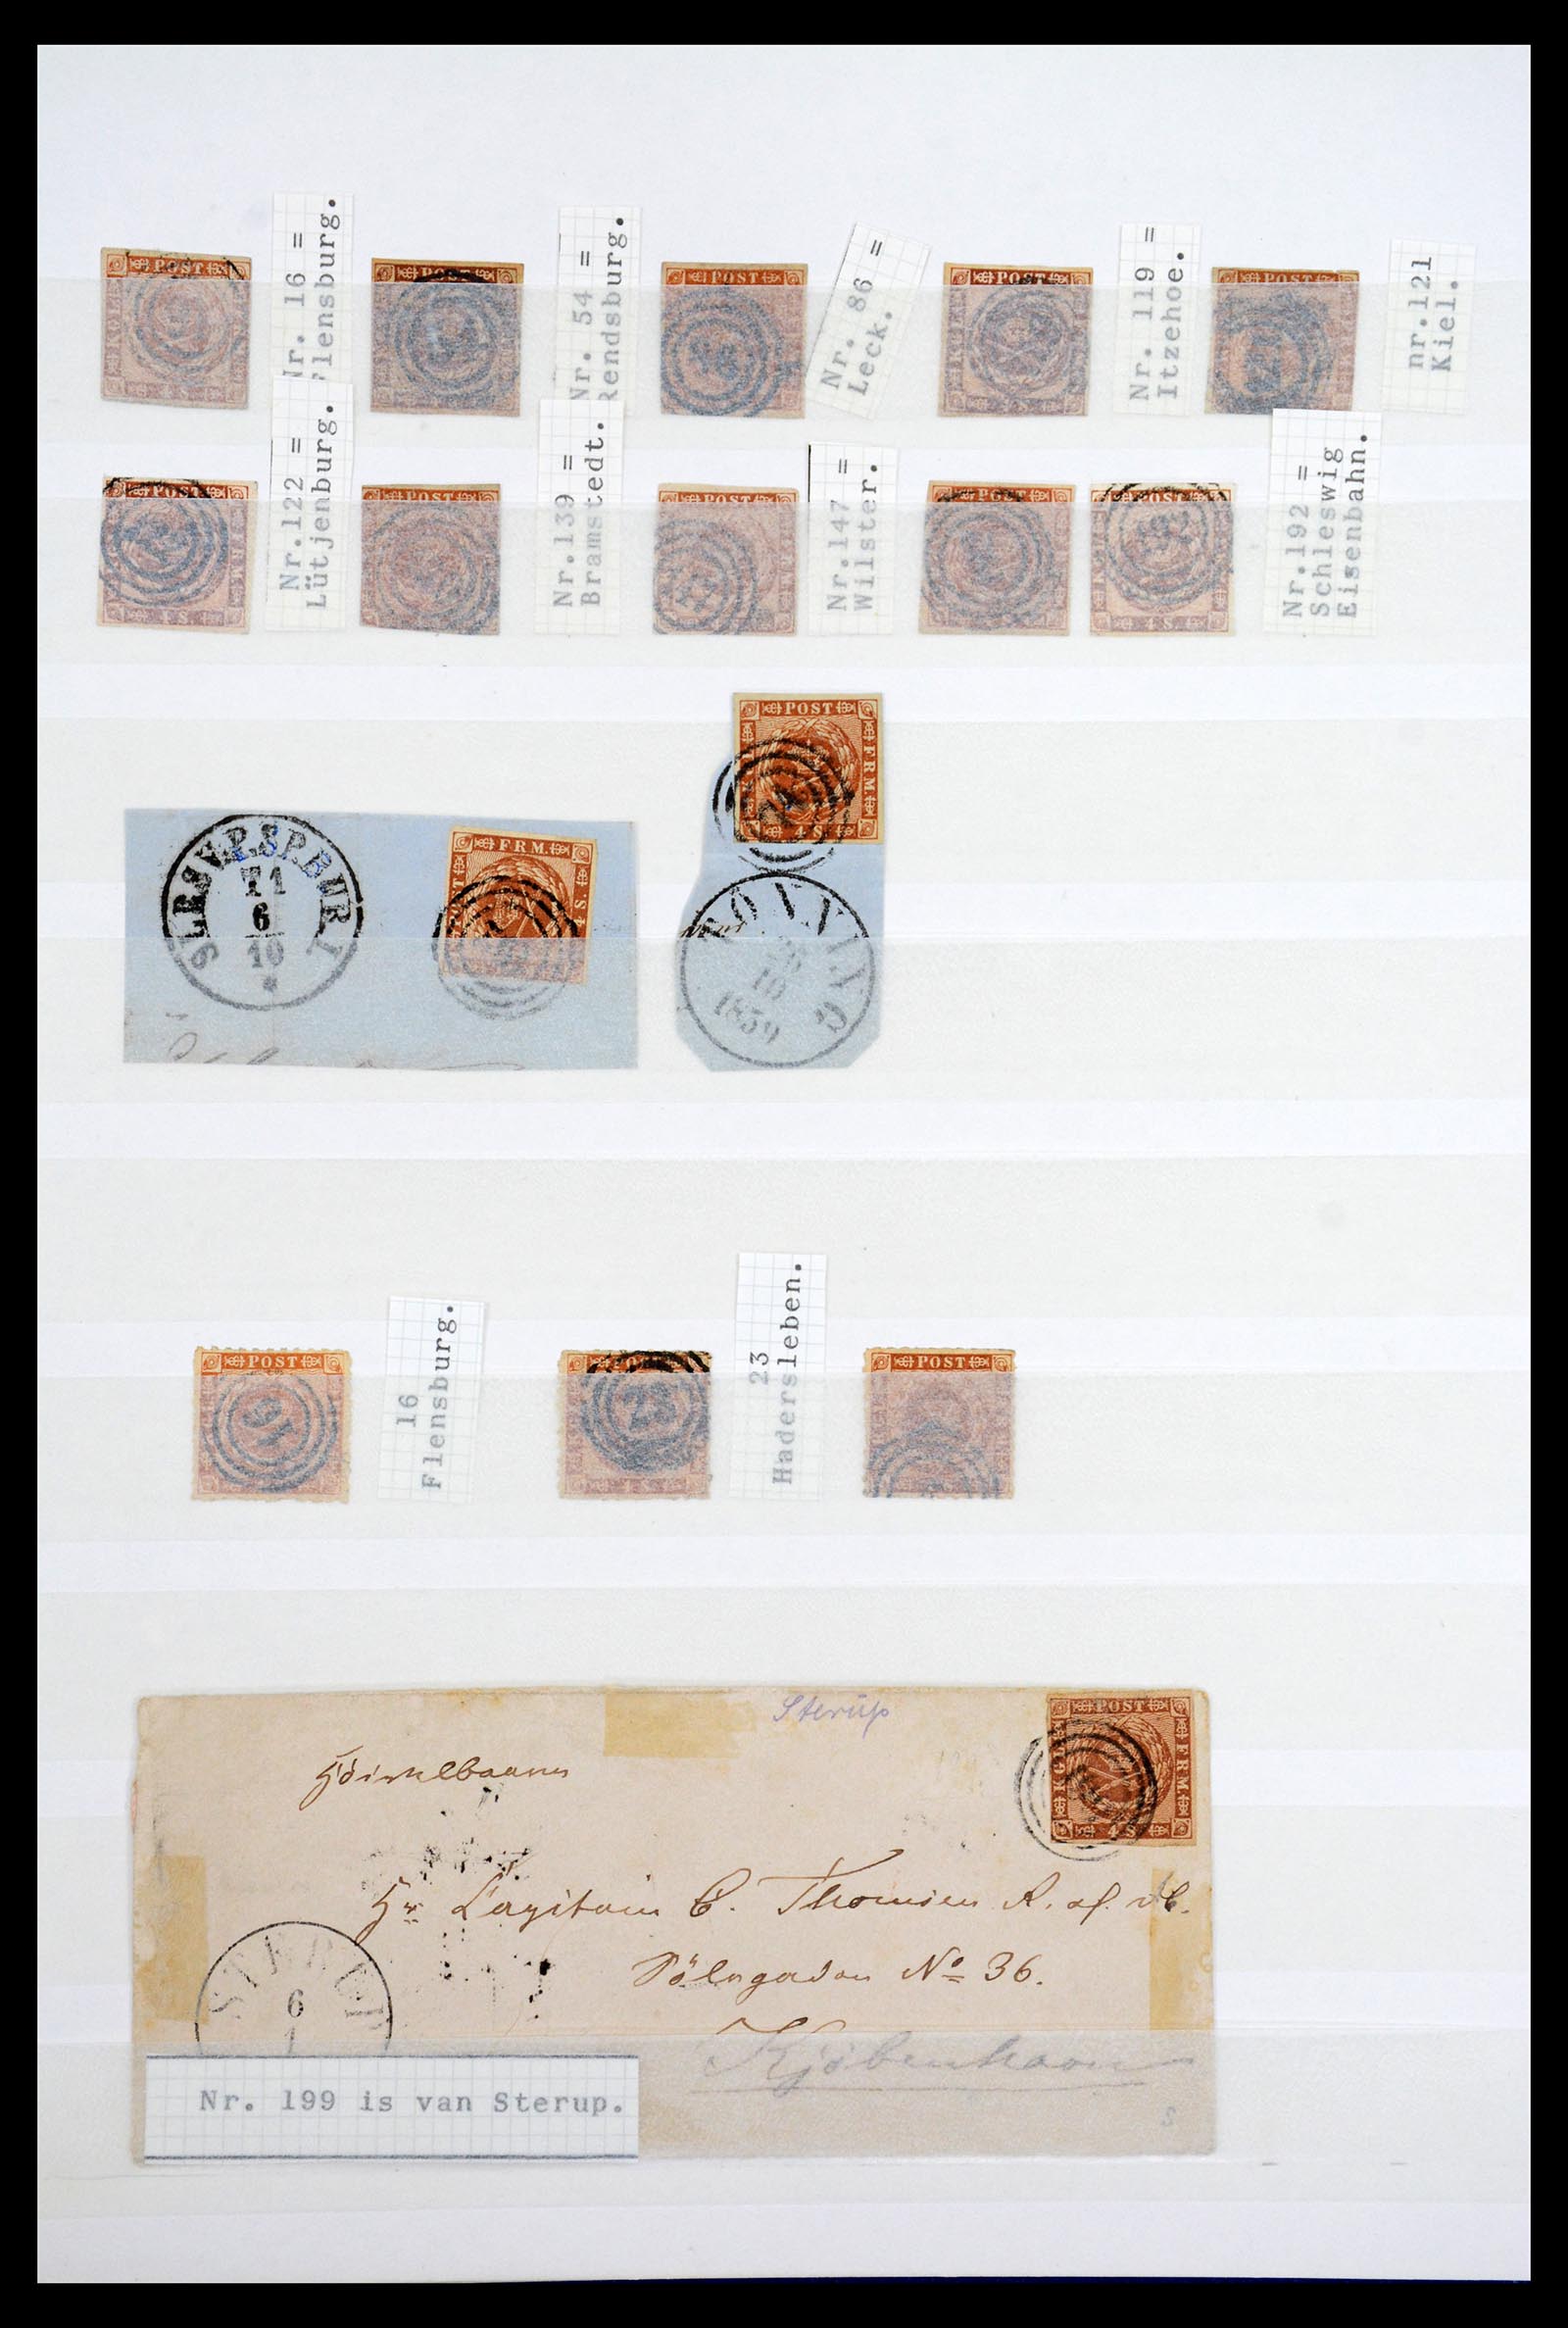 36626 004 - Stamp collection 36626 Schleswig-Holstein 1851-1864.